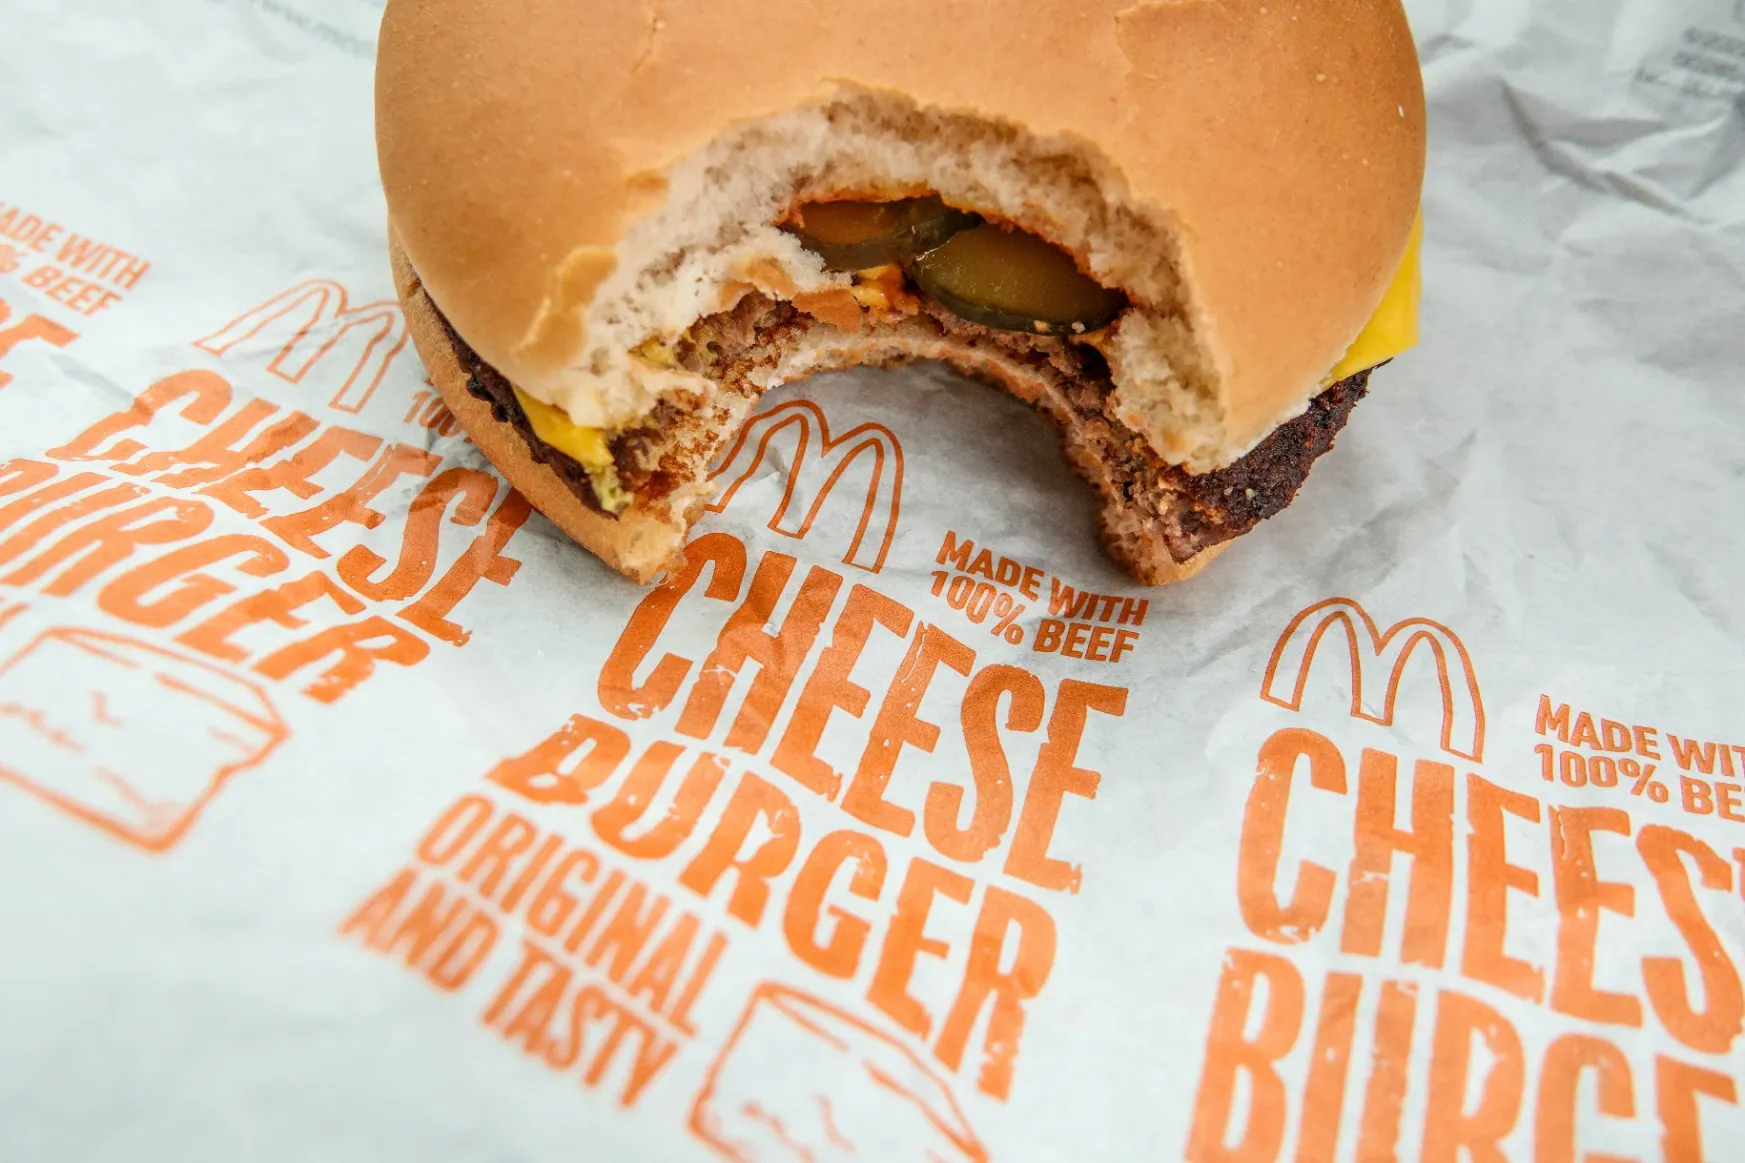 Két év alatt majdnem 60 százalékkal lett drágább a sajtburger a Mekiben